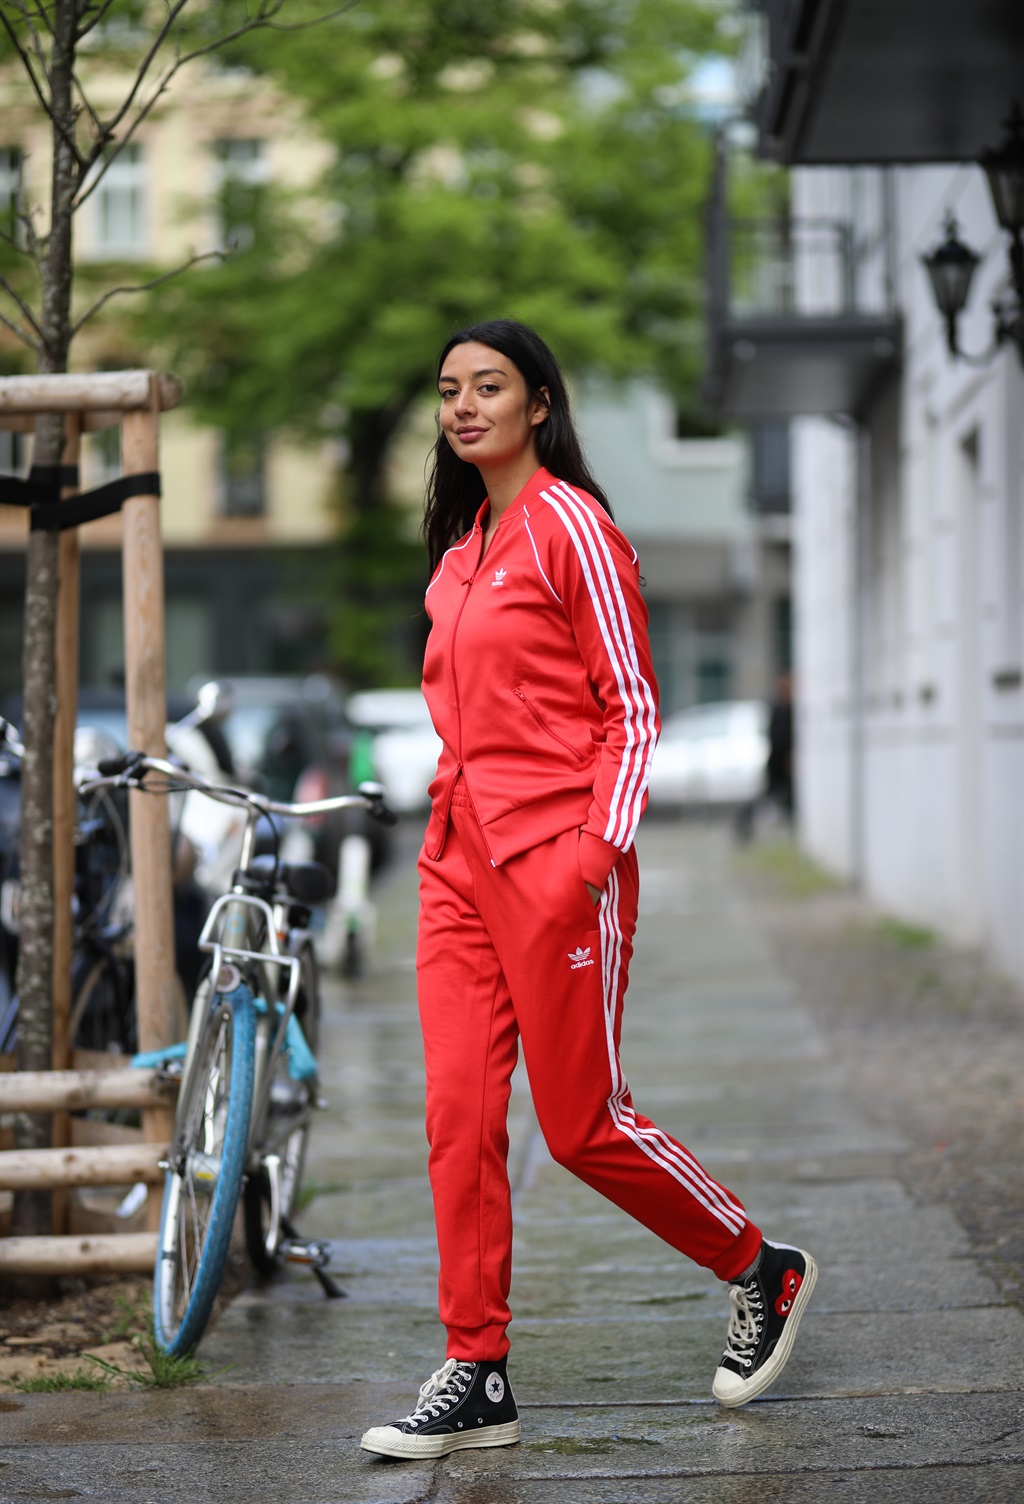 BERLIN, GERMANY - MAY 05: Alyssa Cordes wearing Ad